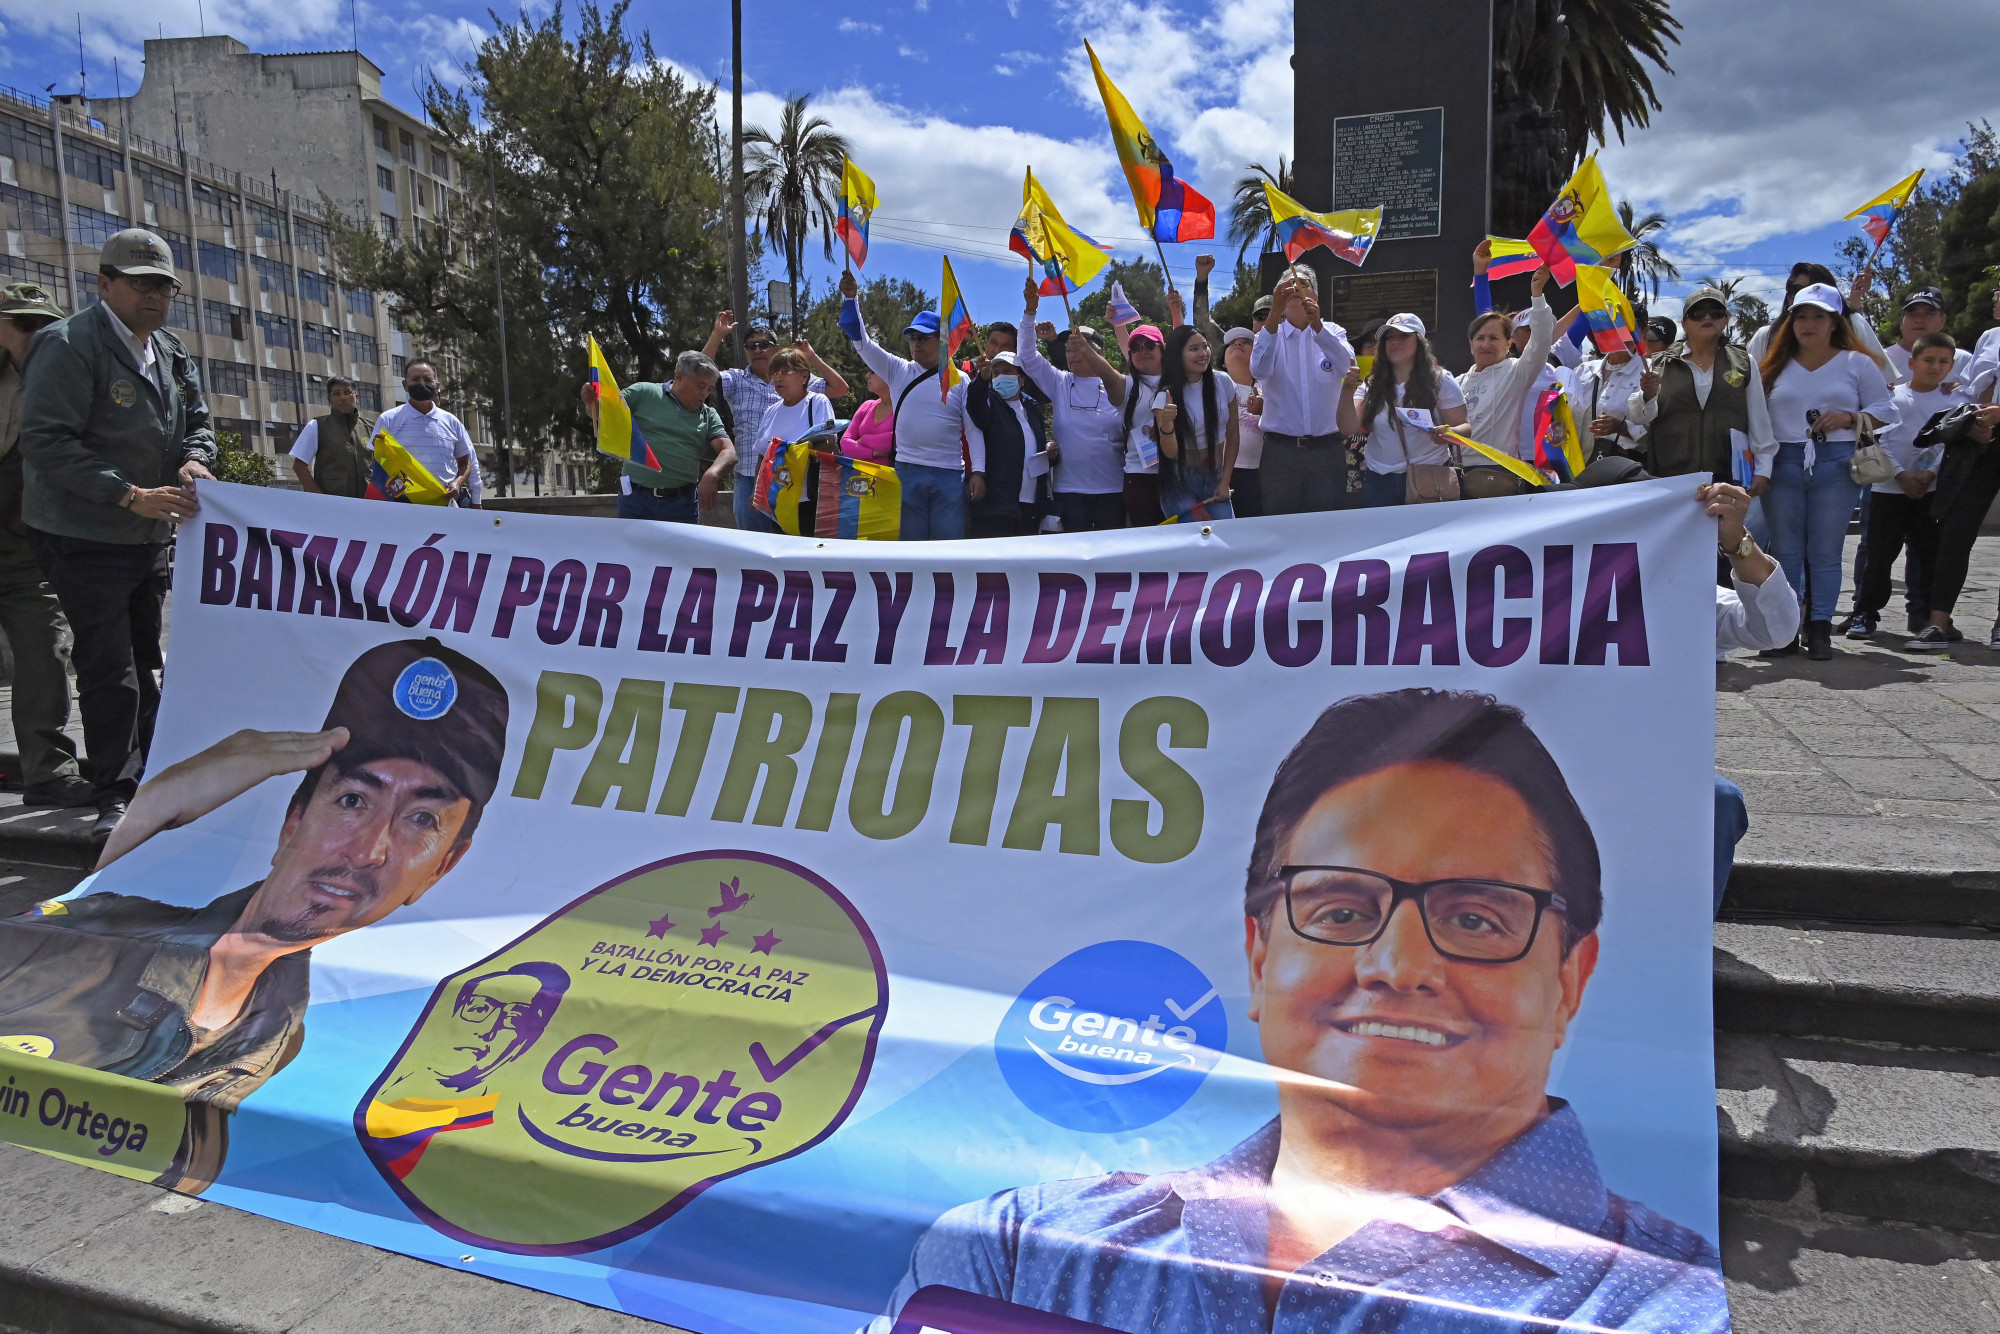 Kolumbiaiakat gyanúsít a korrupcióellenes elnökjelölt megölésével ecuadori rendőrség